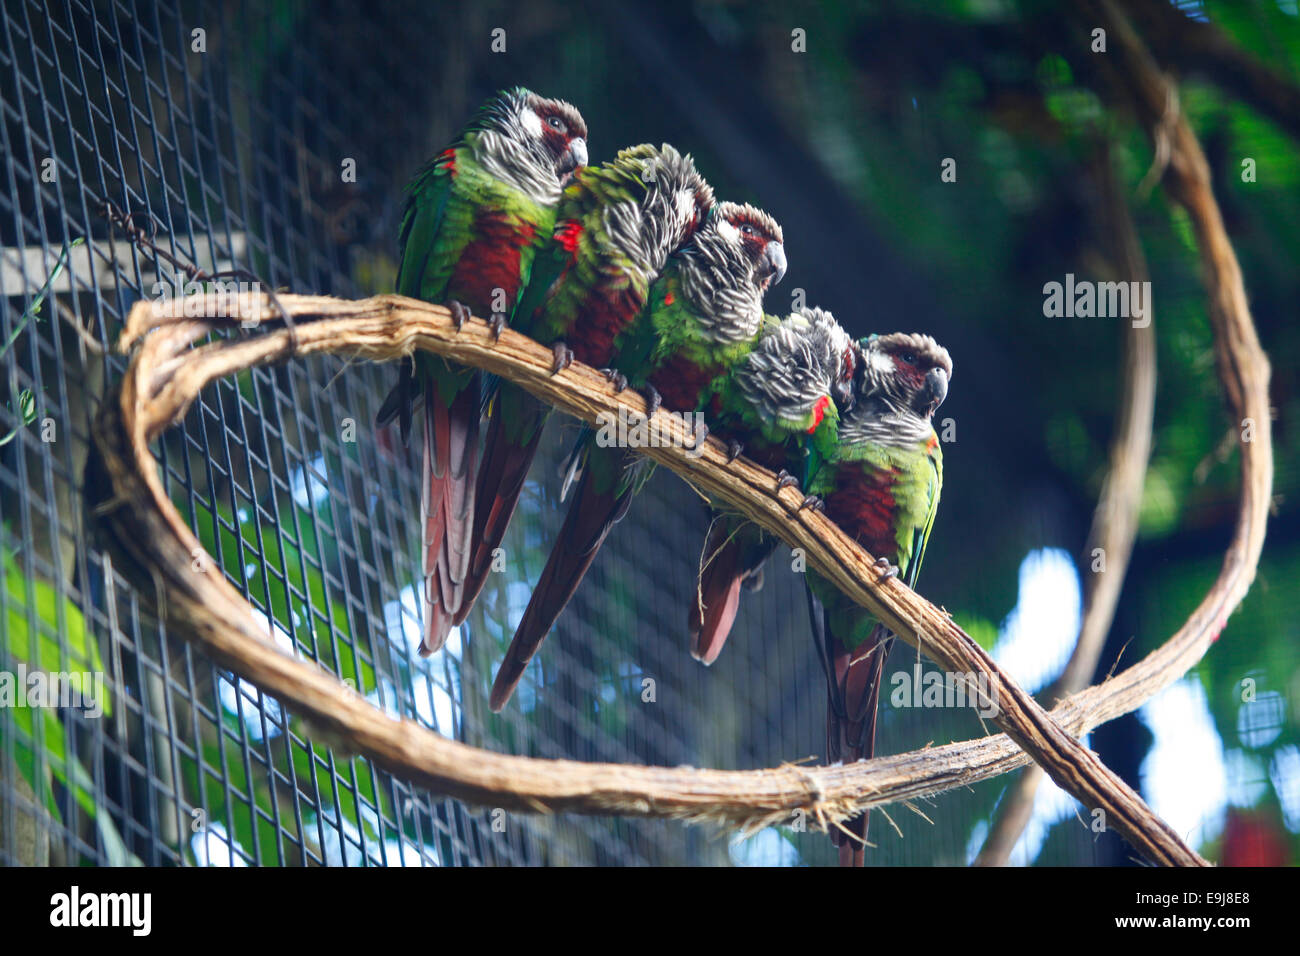 Coloridos pájaros exóticos. Parque das Aves (Parque de las Aves), Foz do Iguaçu, Brasil. Foto de stock